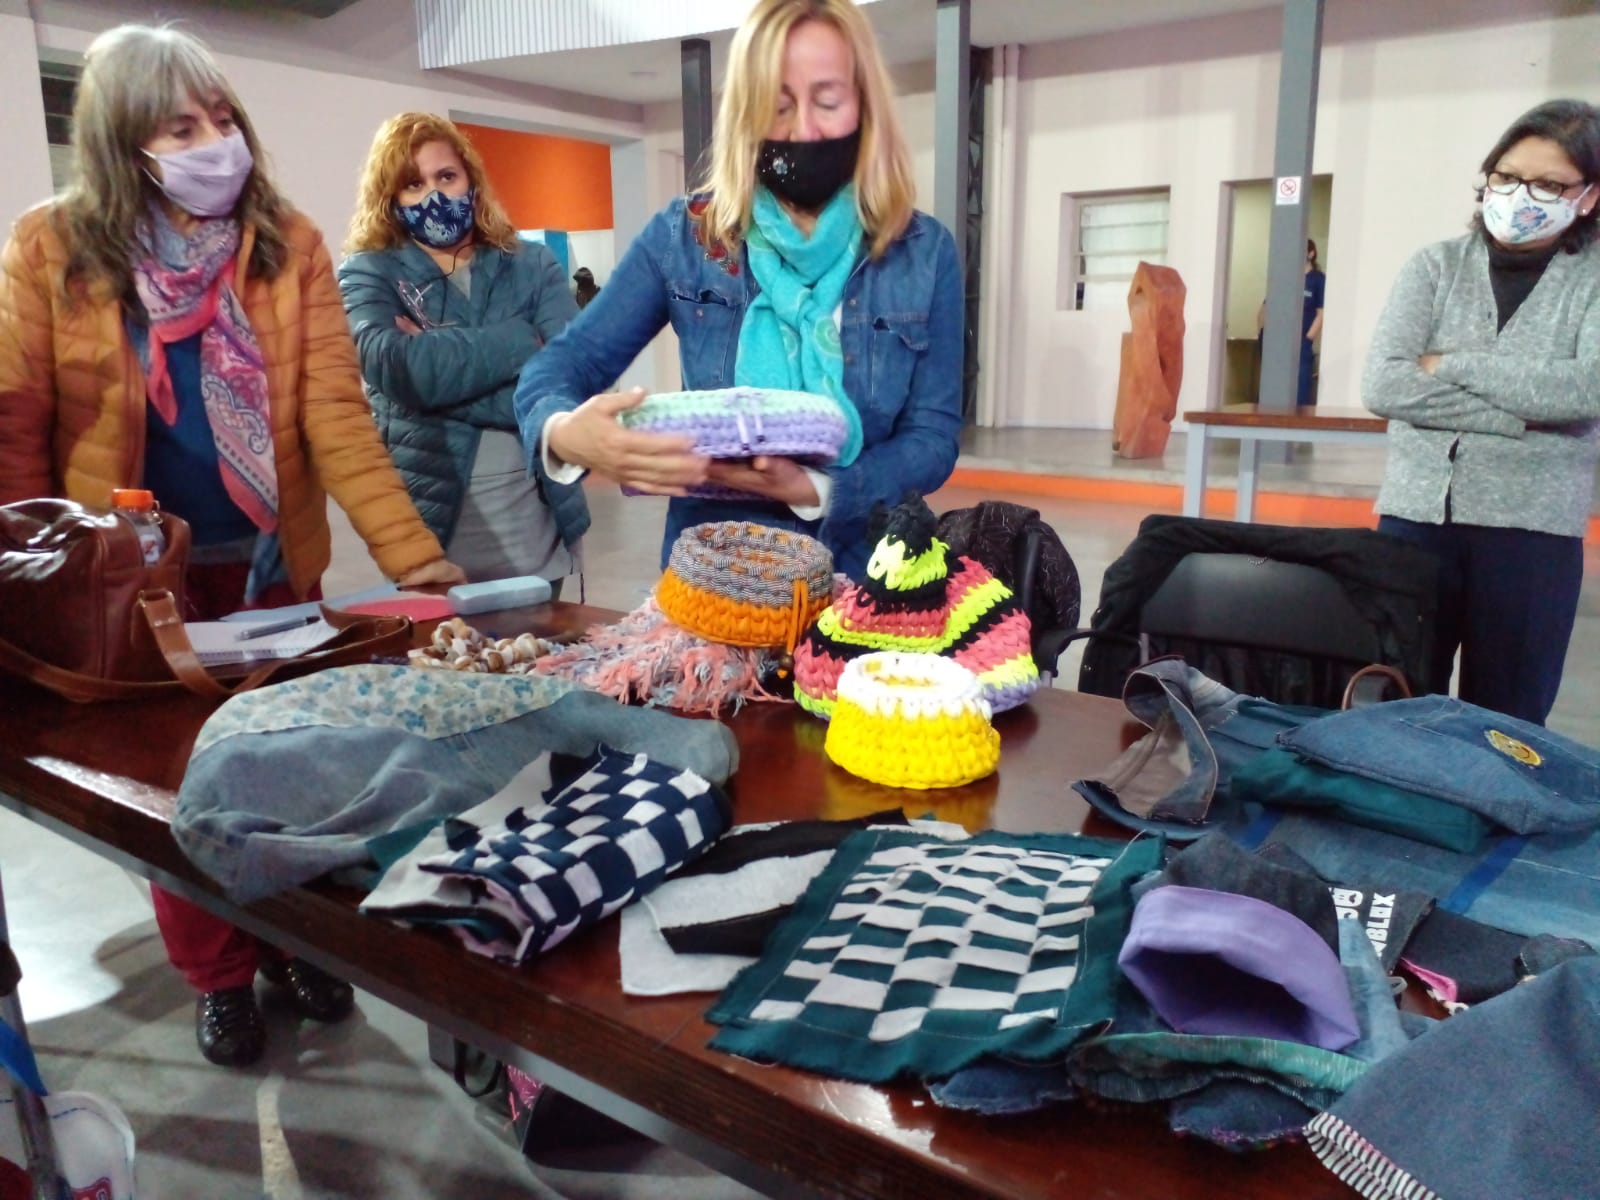 Diego Bartalotta visito la clase de Reciclaje textil que forma parte del proyecto “Avellaneda recicla”.